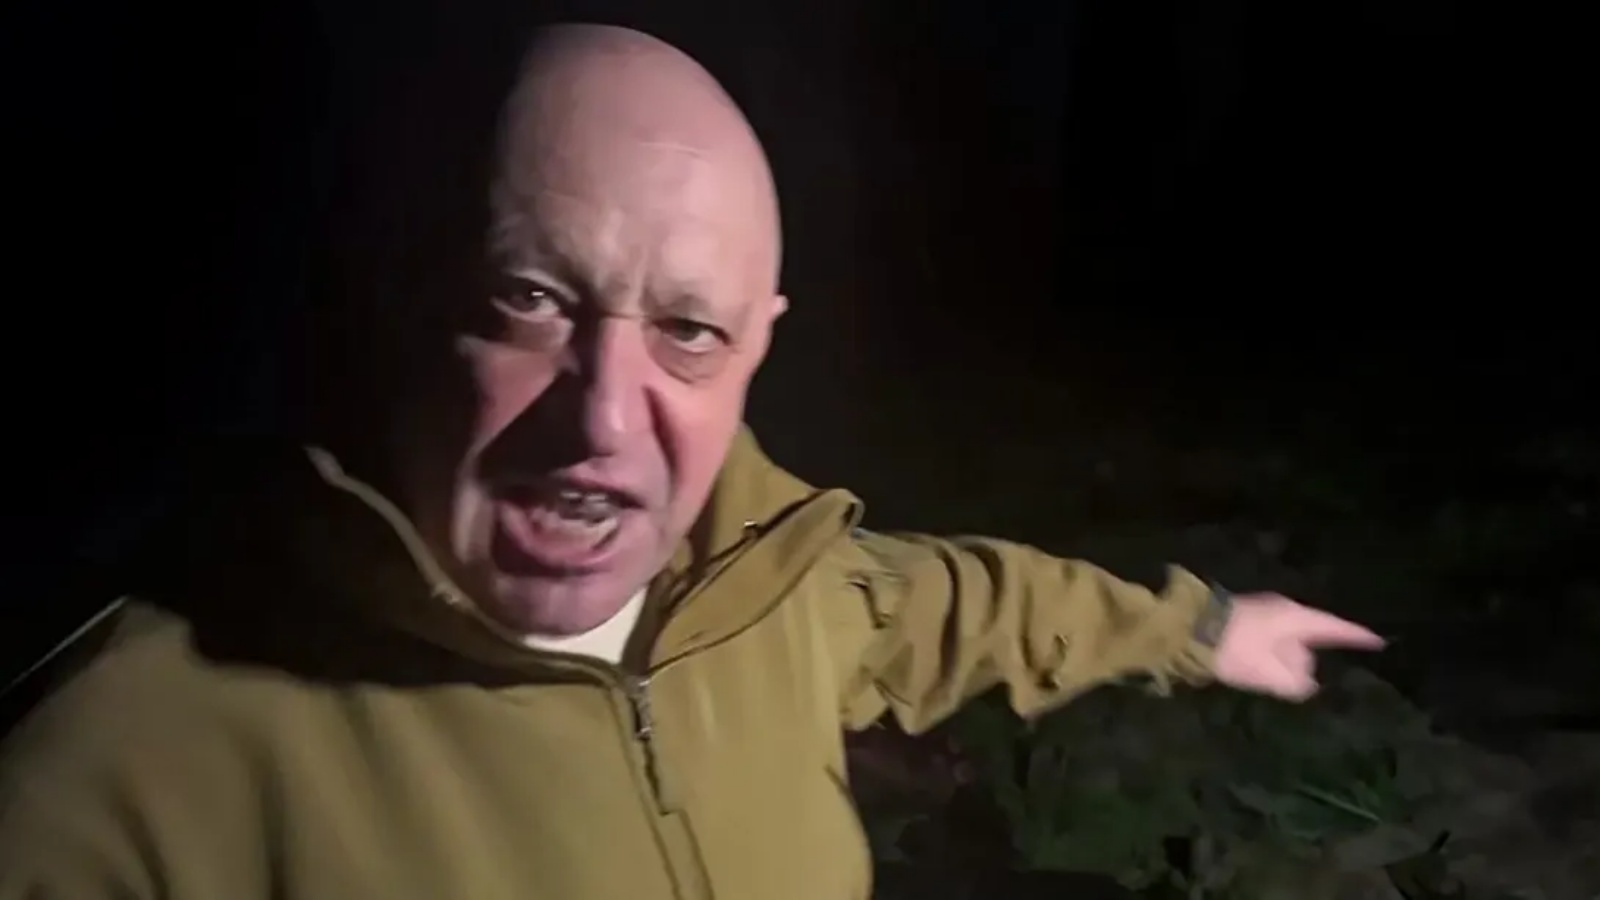 بريغوجين يخاطب كبار ضباط الجيش الروسي في شريط فيديو نُشر يوم الخميس